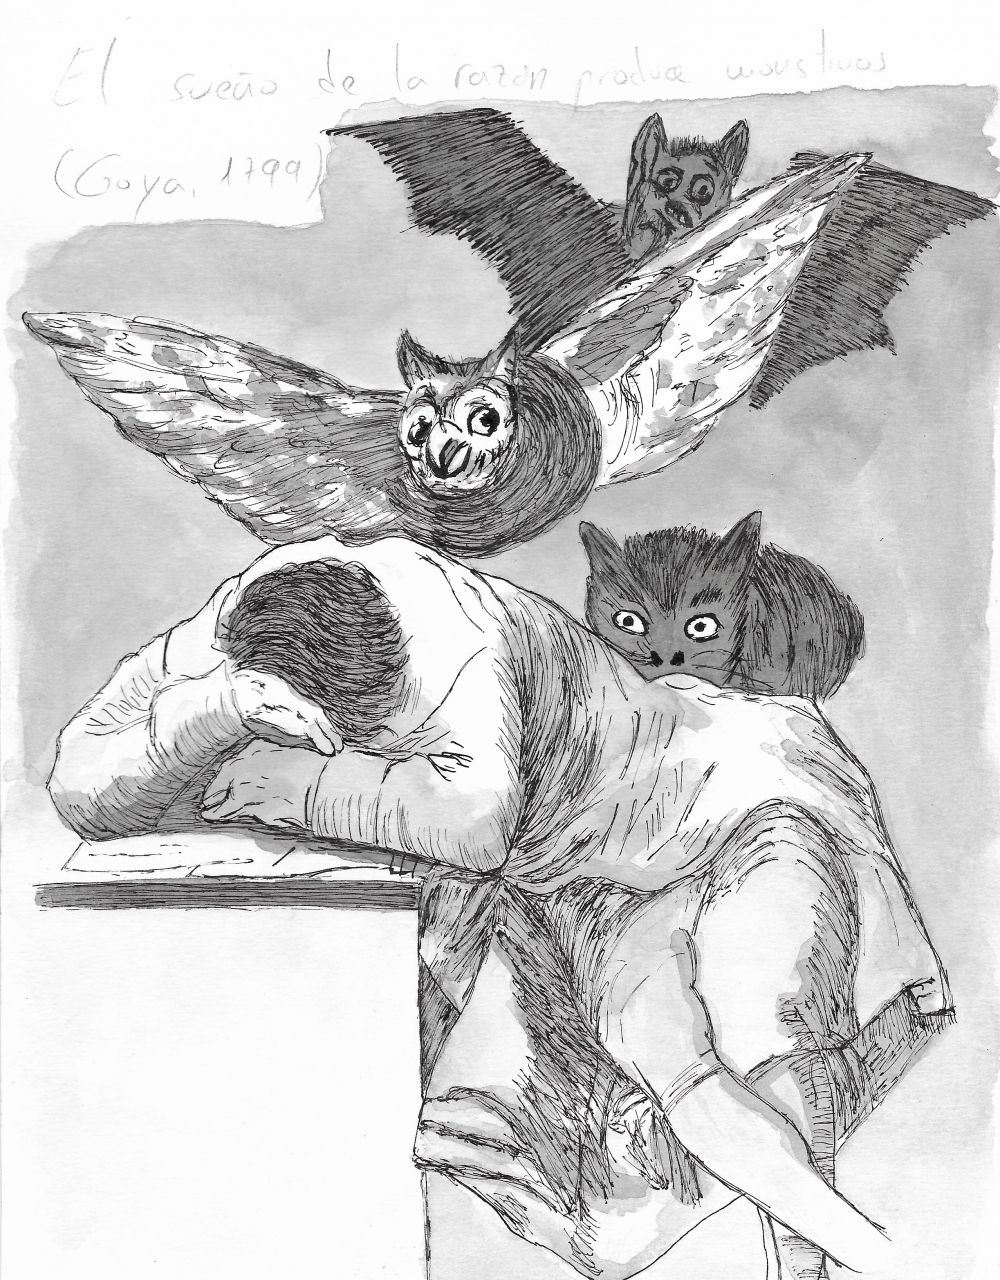 El sueño de la razón produce monstruos (Goya, 1799)